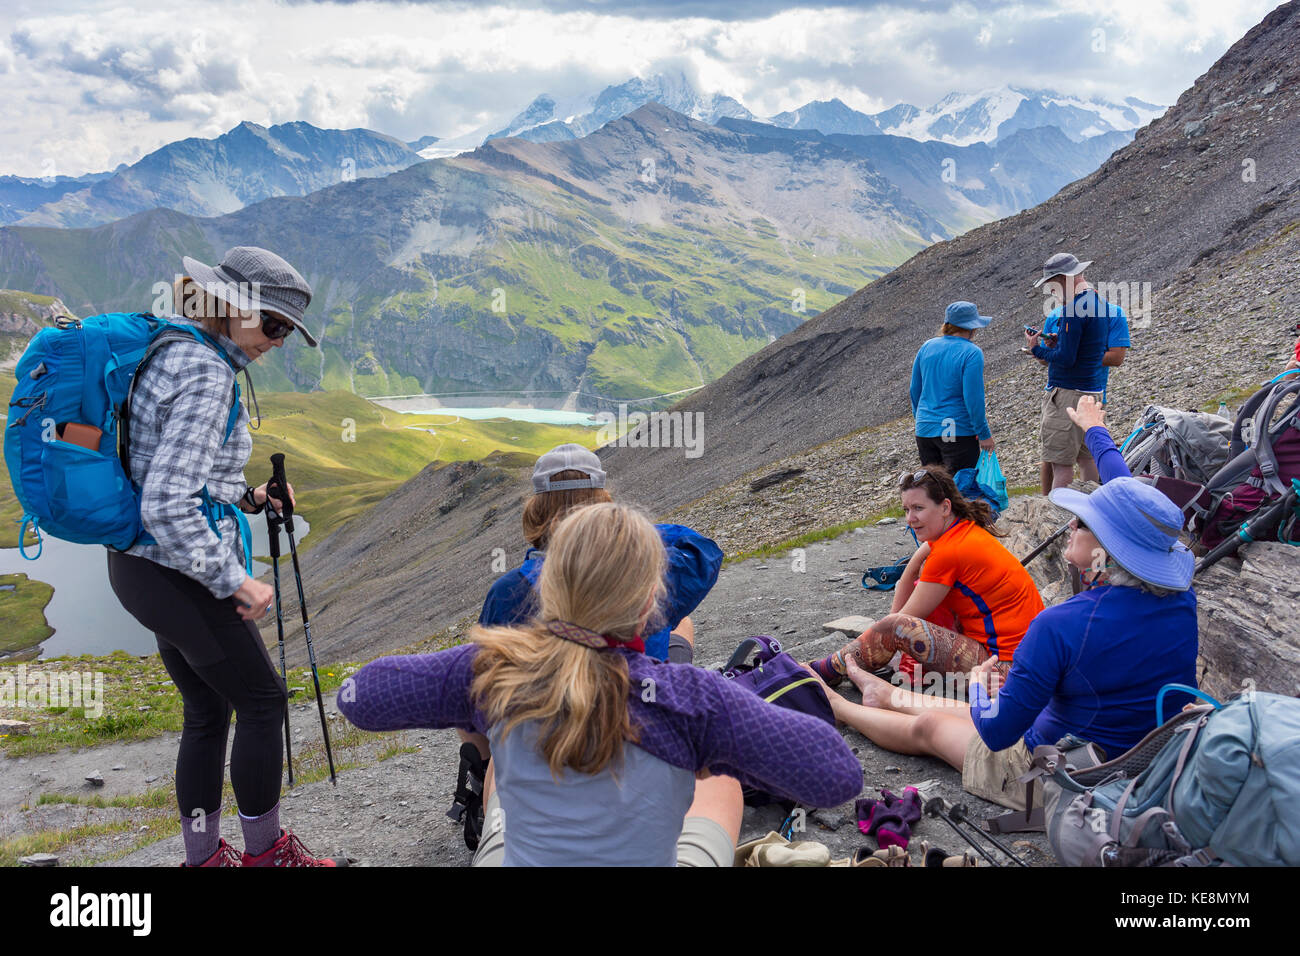 La vallée de Moiry, Suisse - les randonneurs sur Ridge, dans les Alpes Pennines dans le canton du Valais. Banque D'Images